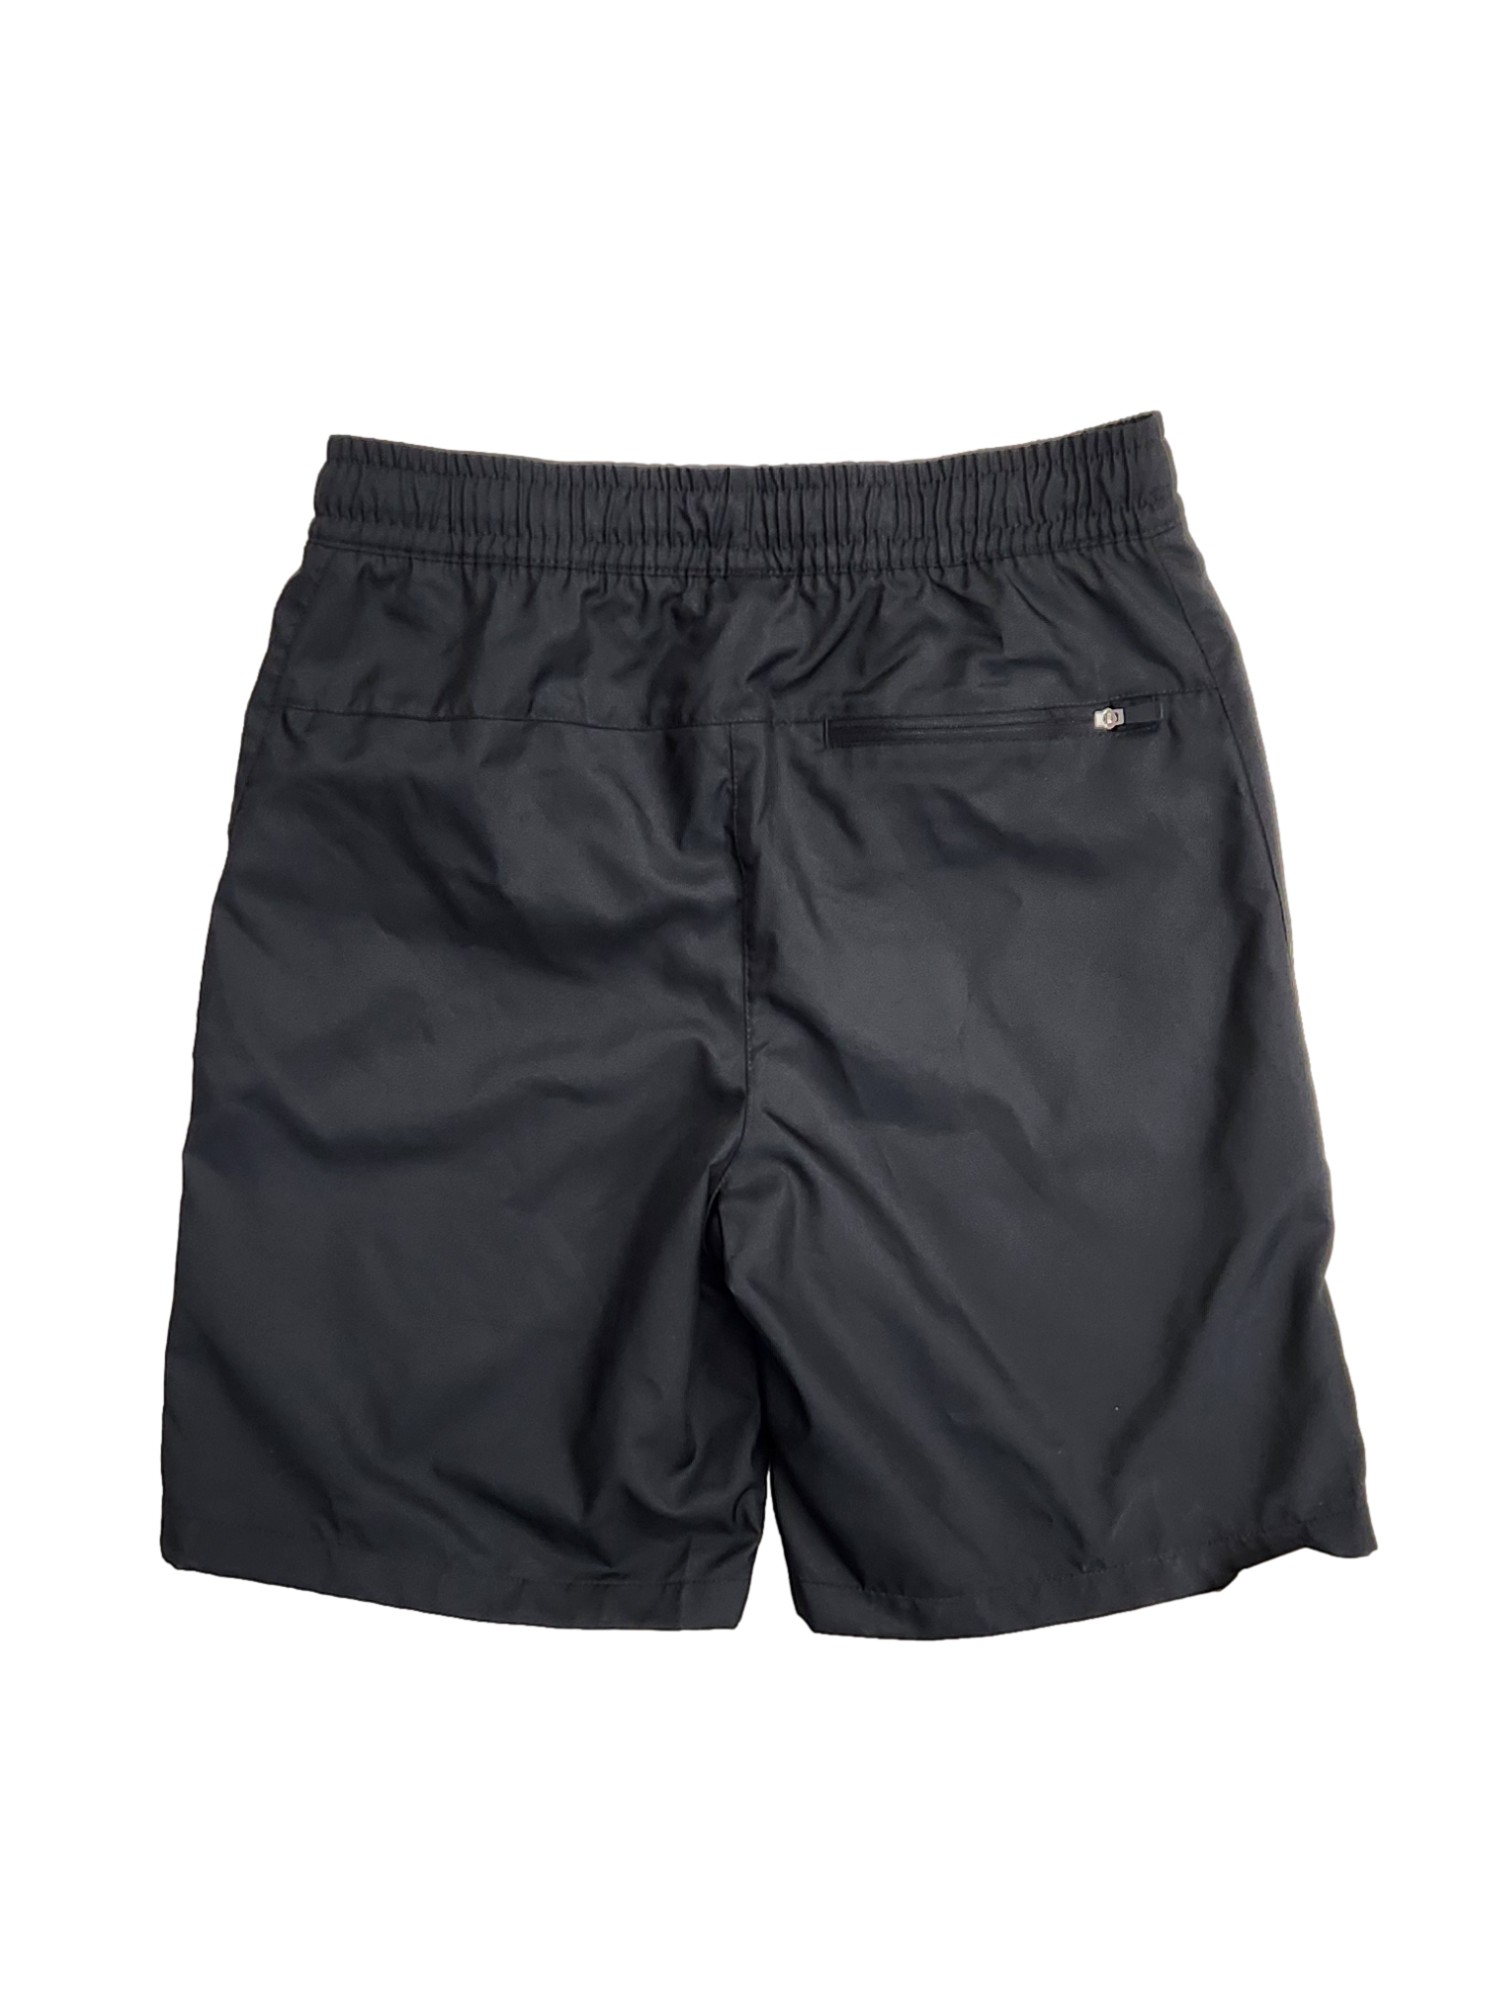 Nike Dry Big Boys Gray Athletic Basketball Shorts With Back Pocket Large 10